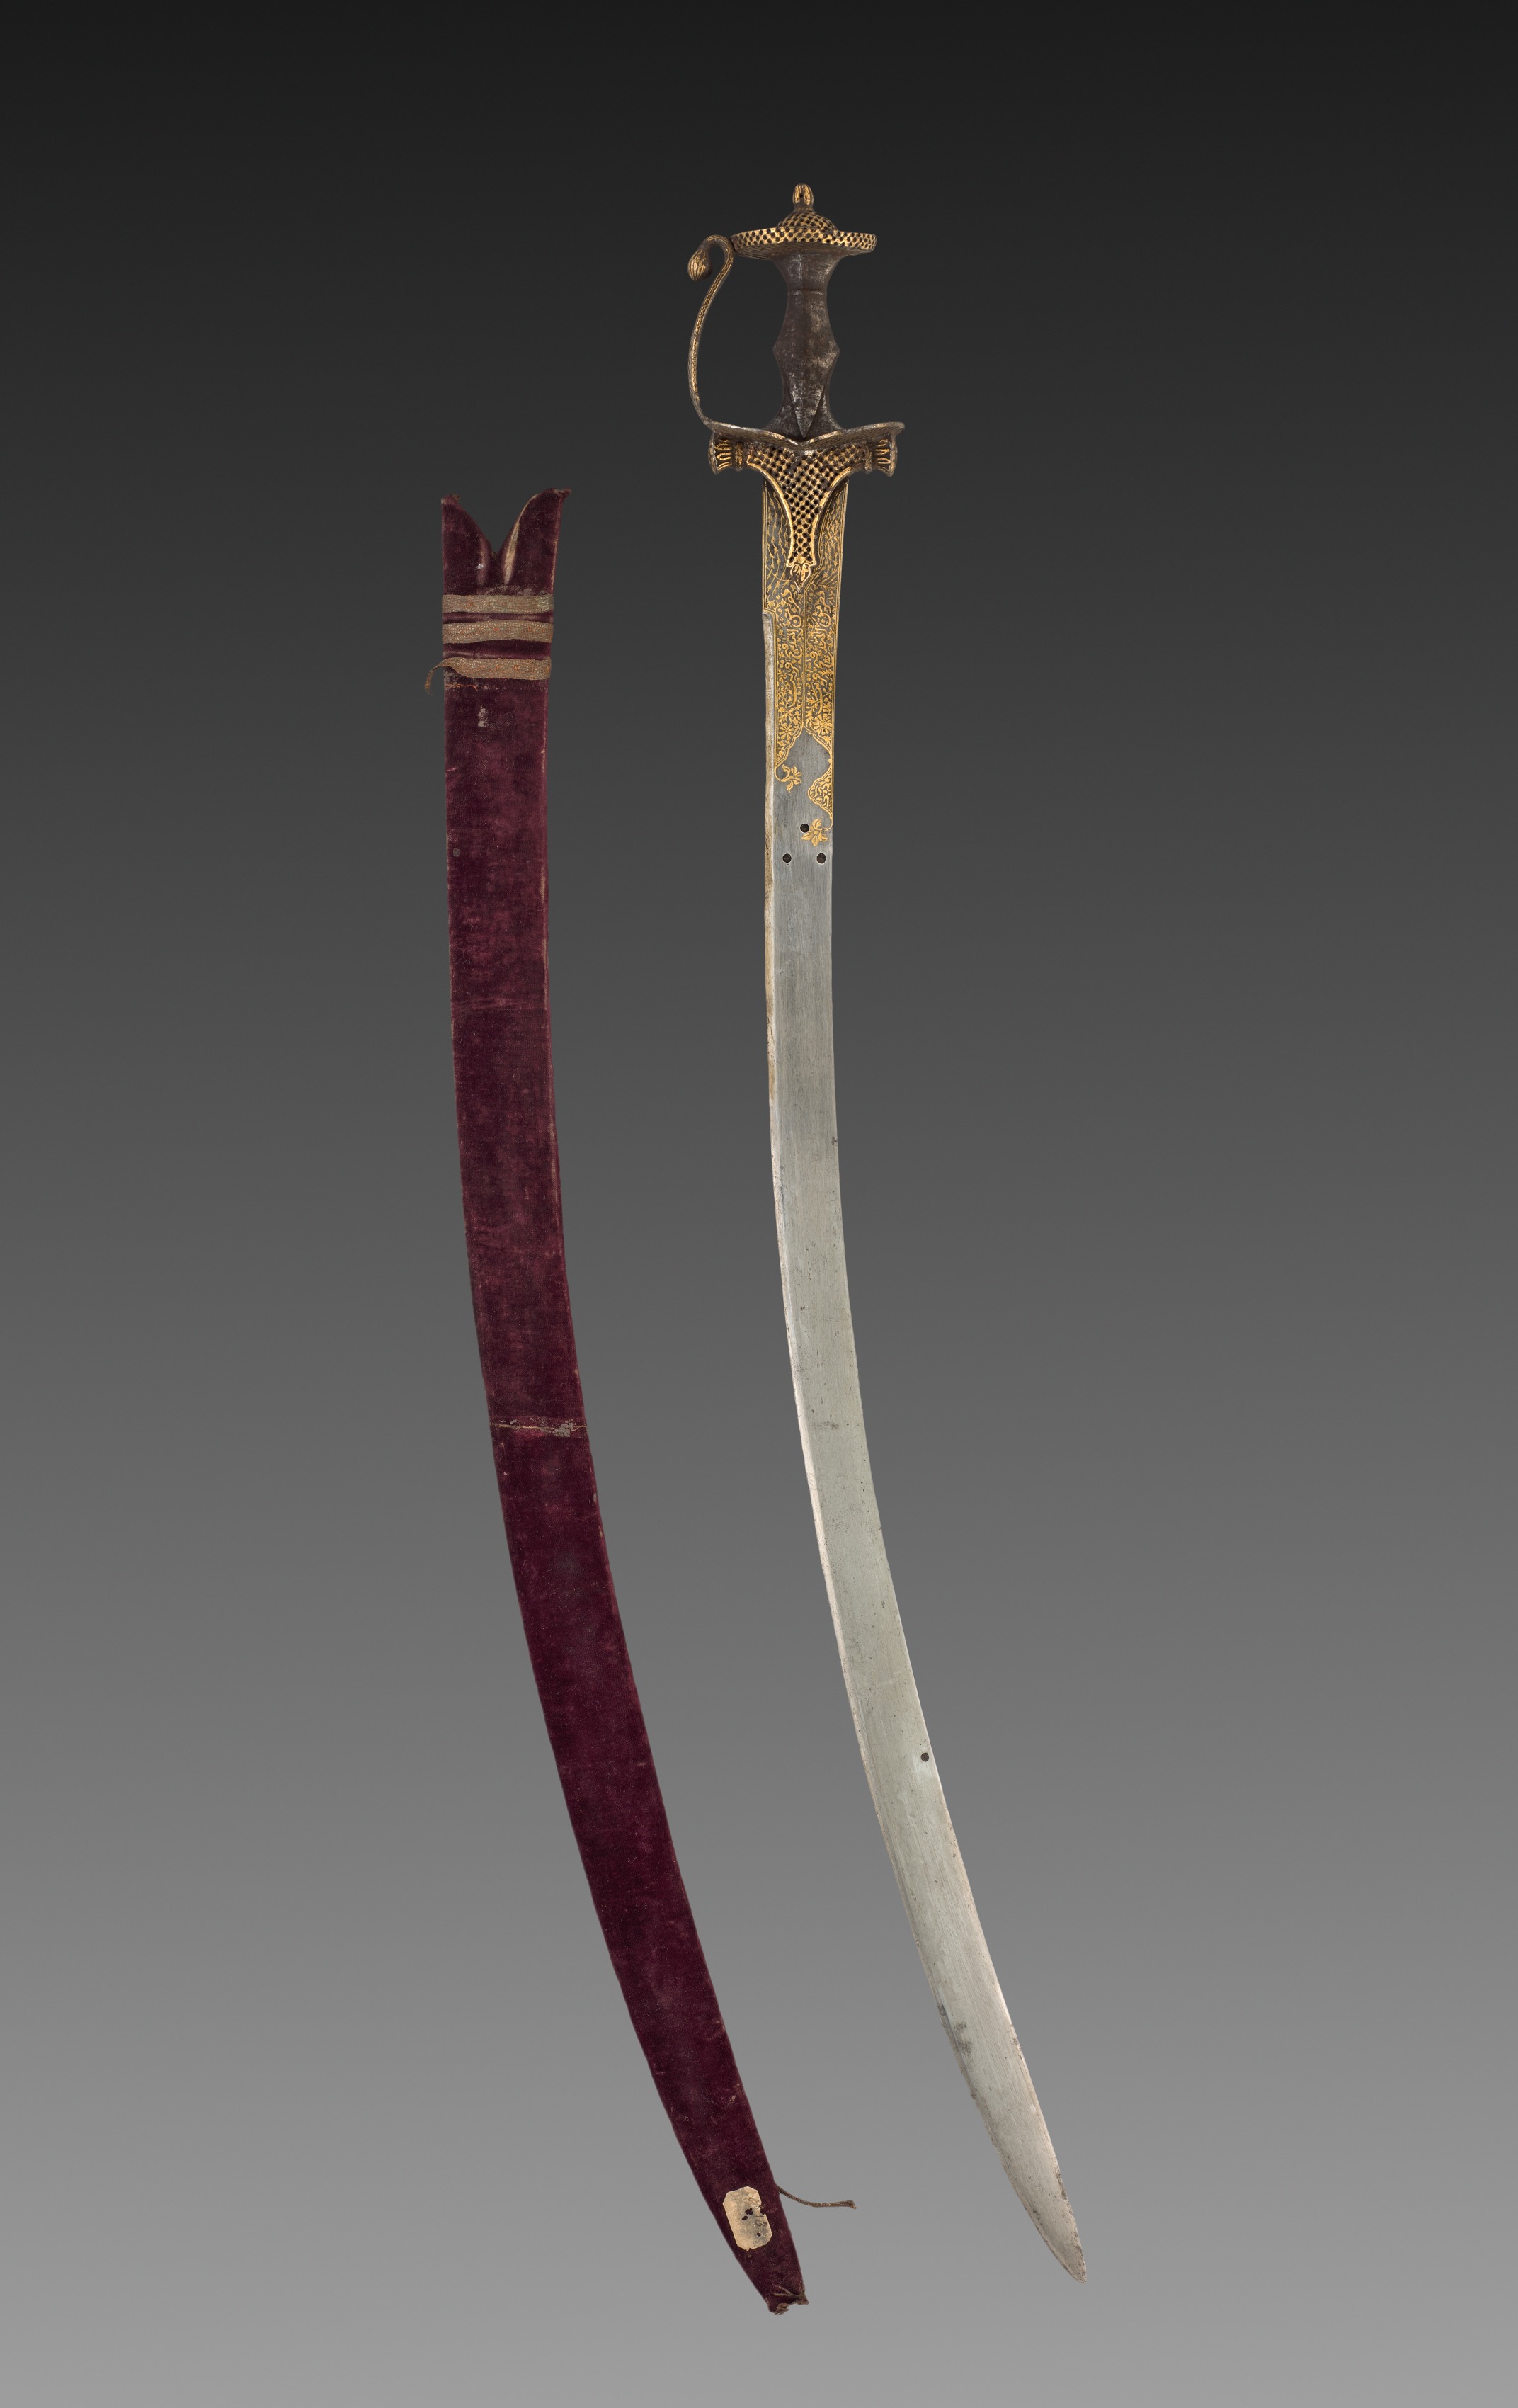 Tulwar sword